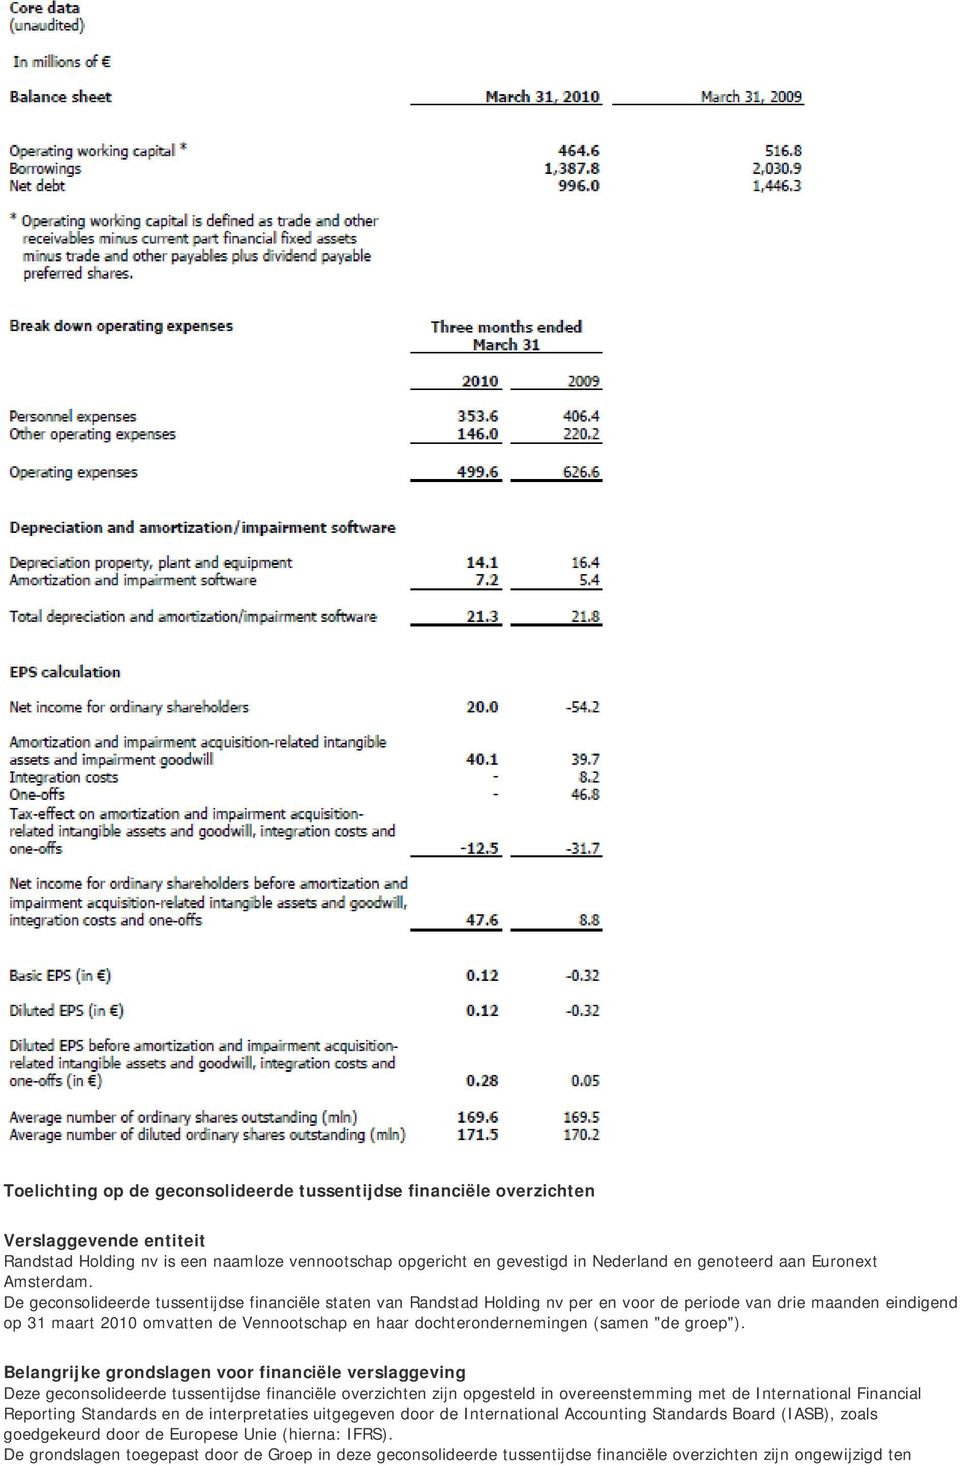 De geconsolideerde tussentijdse financiële staten van Randstad Holding nv per en voor de periode van drie maanden eindigend op 31 maart 2010 omvatten de Vennootschap en haar dochterondernemingen